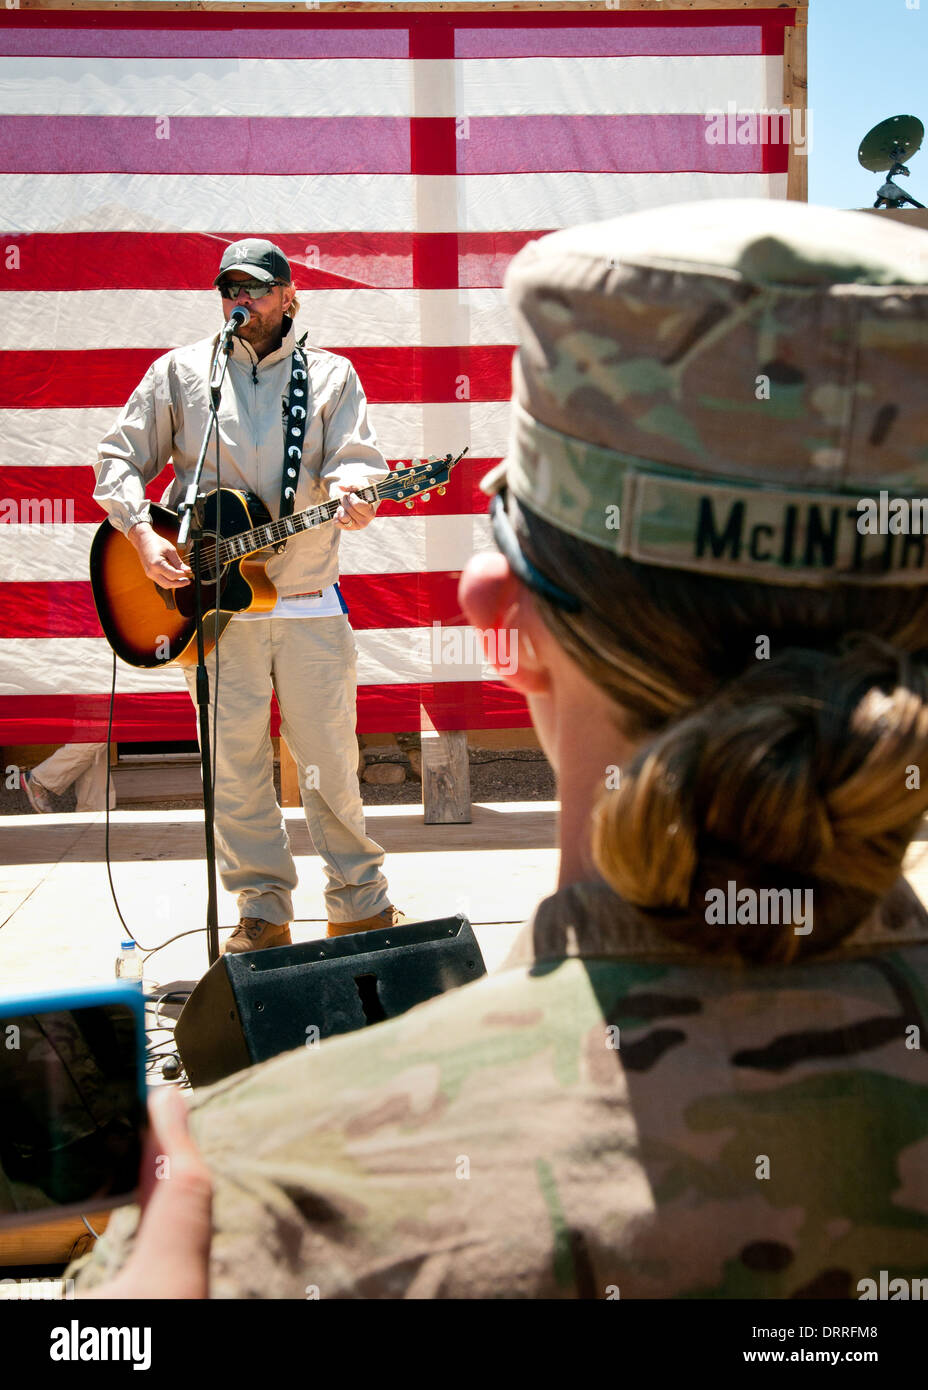 Country-Musik-Sänger Toby Keith für die Truppen während ein Überraschungskonzert 29. April 2012 auf Forward Operating Base Sharana in der Provinz Paktika, Afghanistan durchführt. Stockfoto